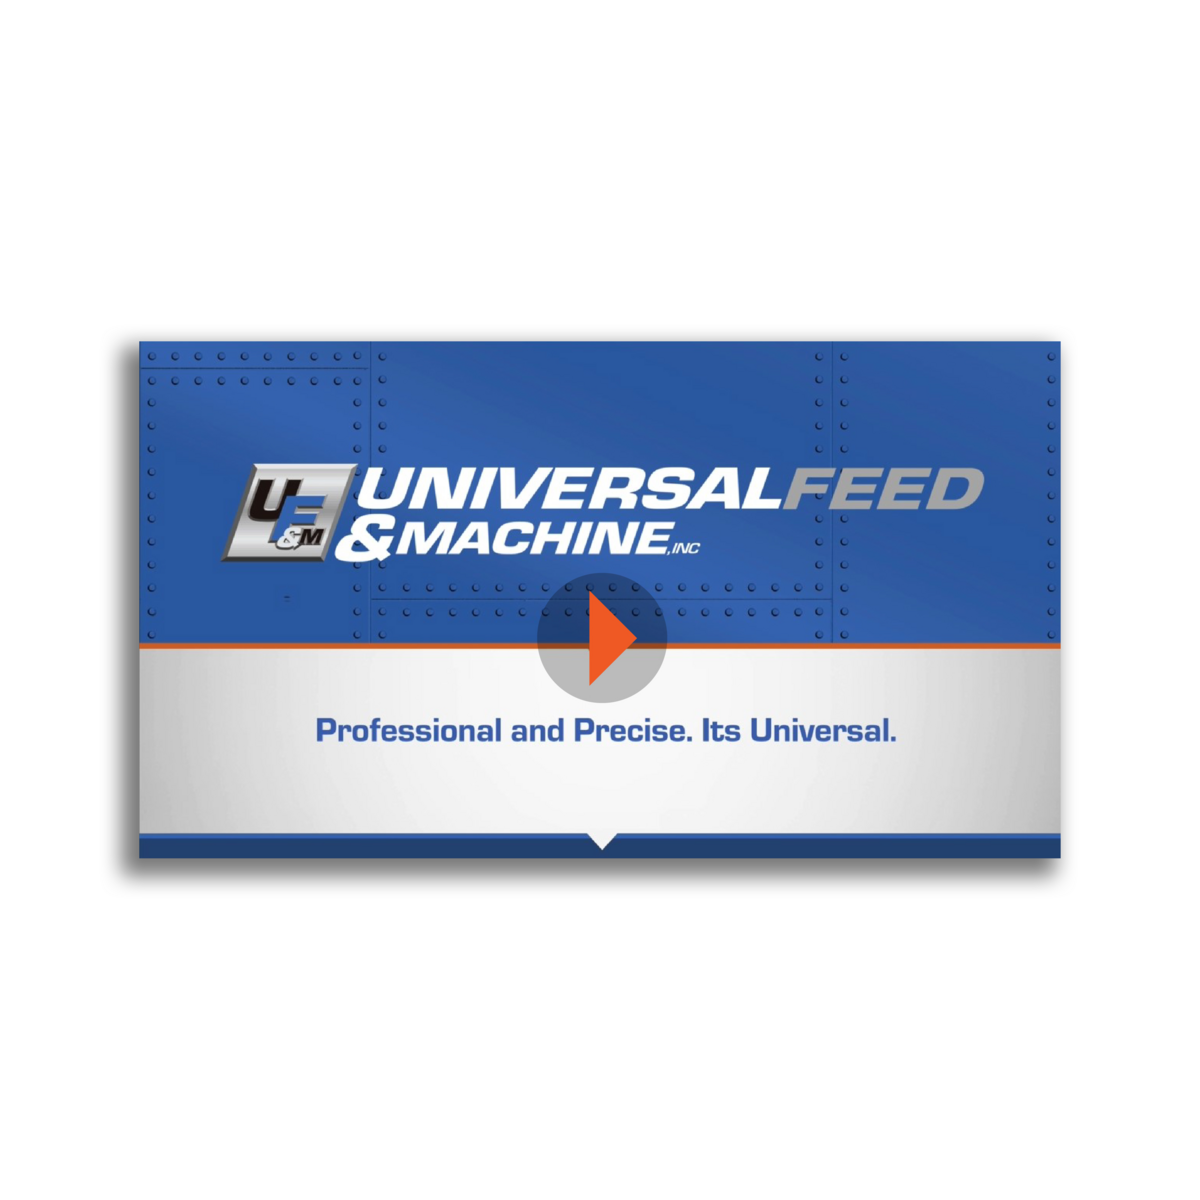 UFM Product Line Video